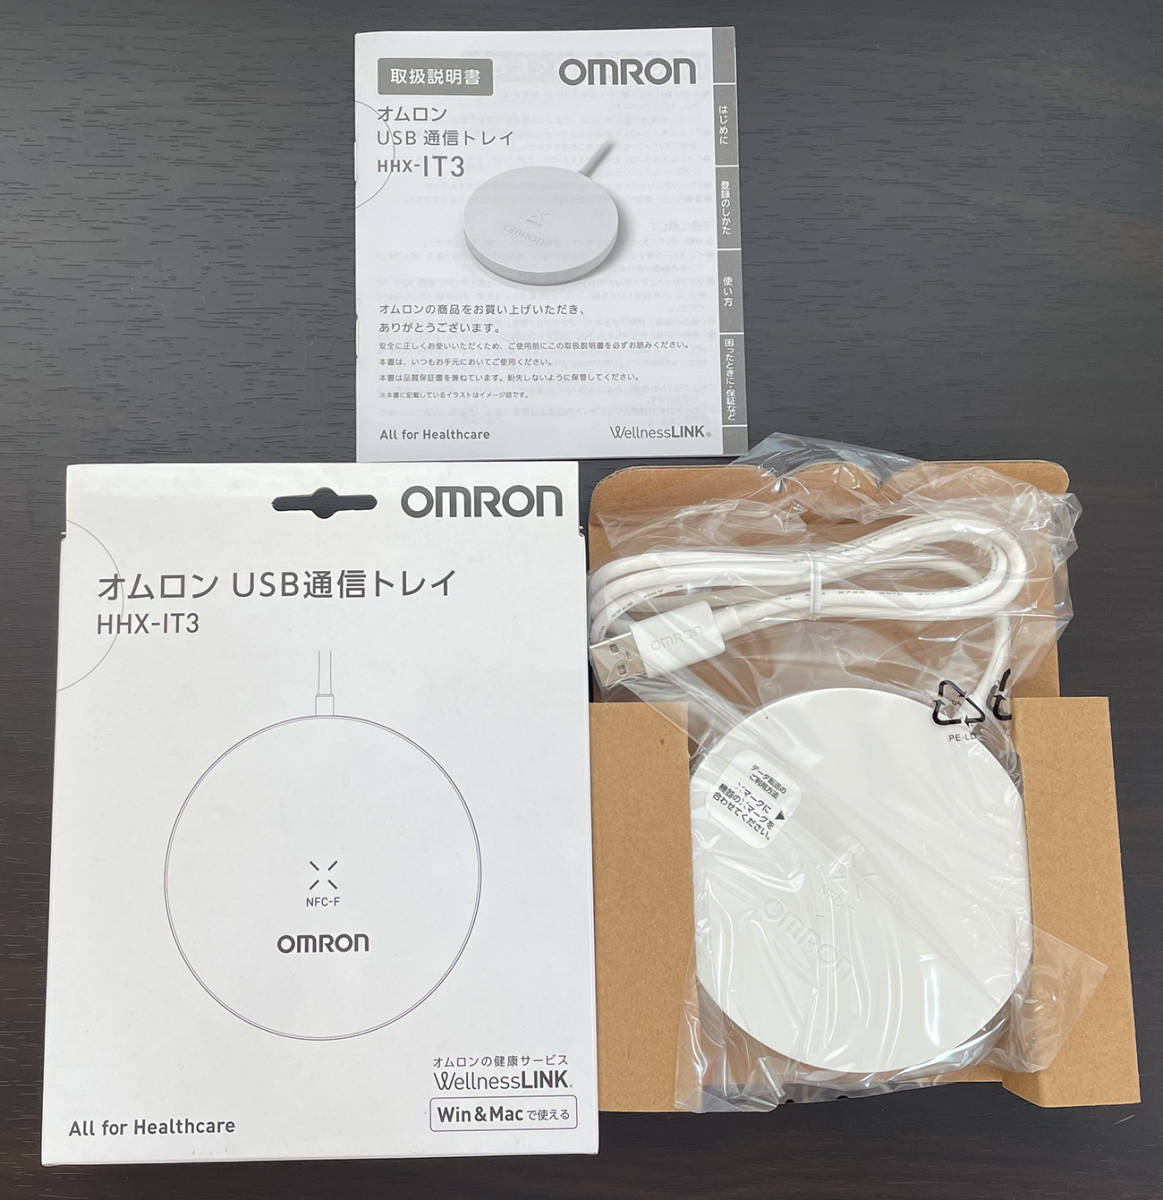 OMRON オムロン USB通信トレイ HHX-IT3【ウェルネスリンク対応】 未使用品 送料無料 002｜PayPayフリマ